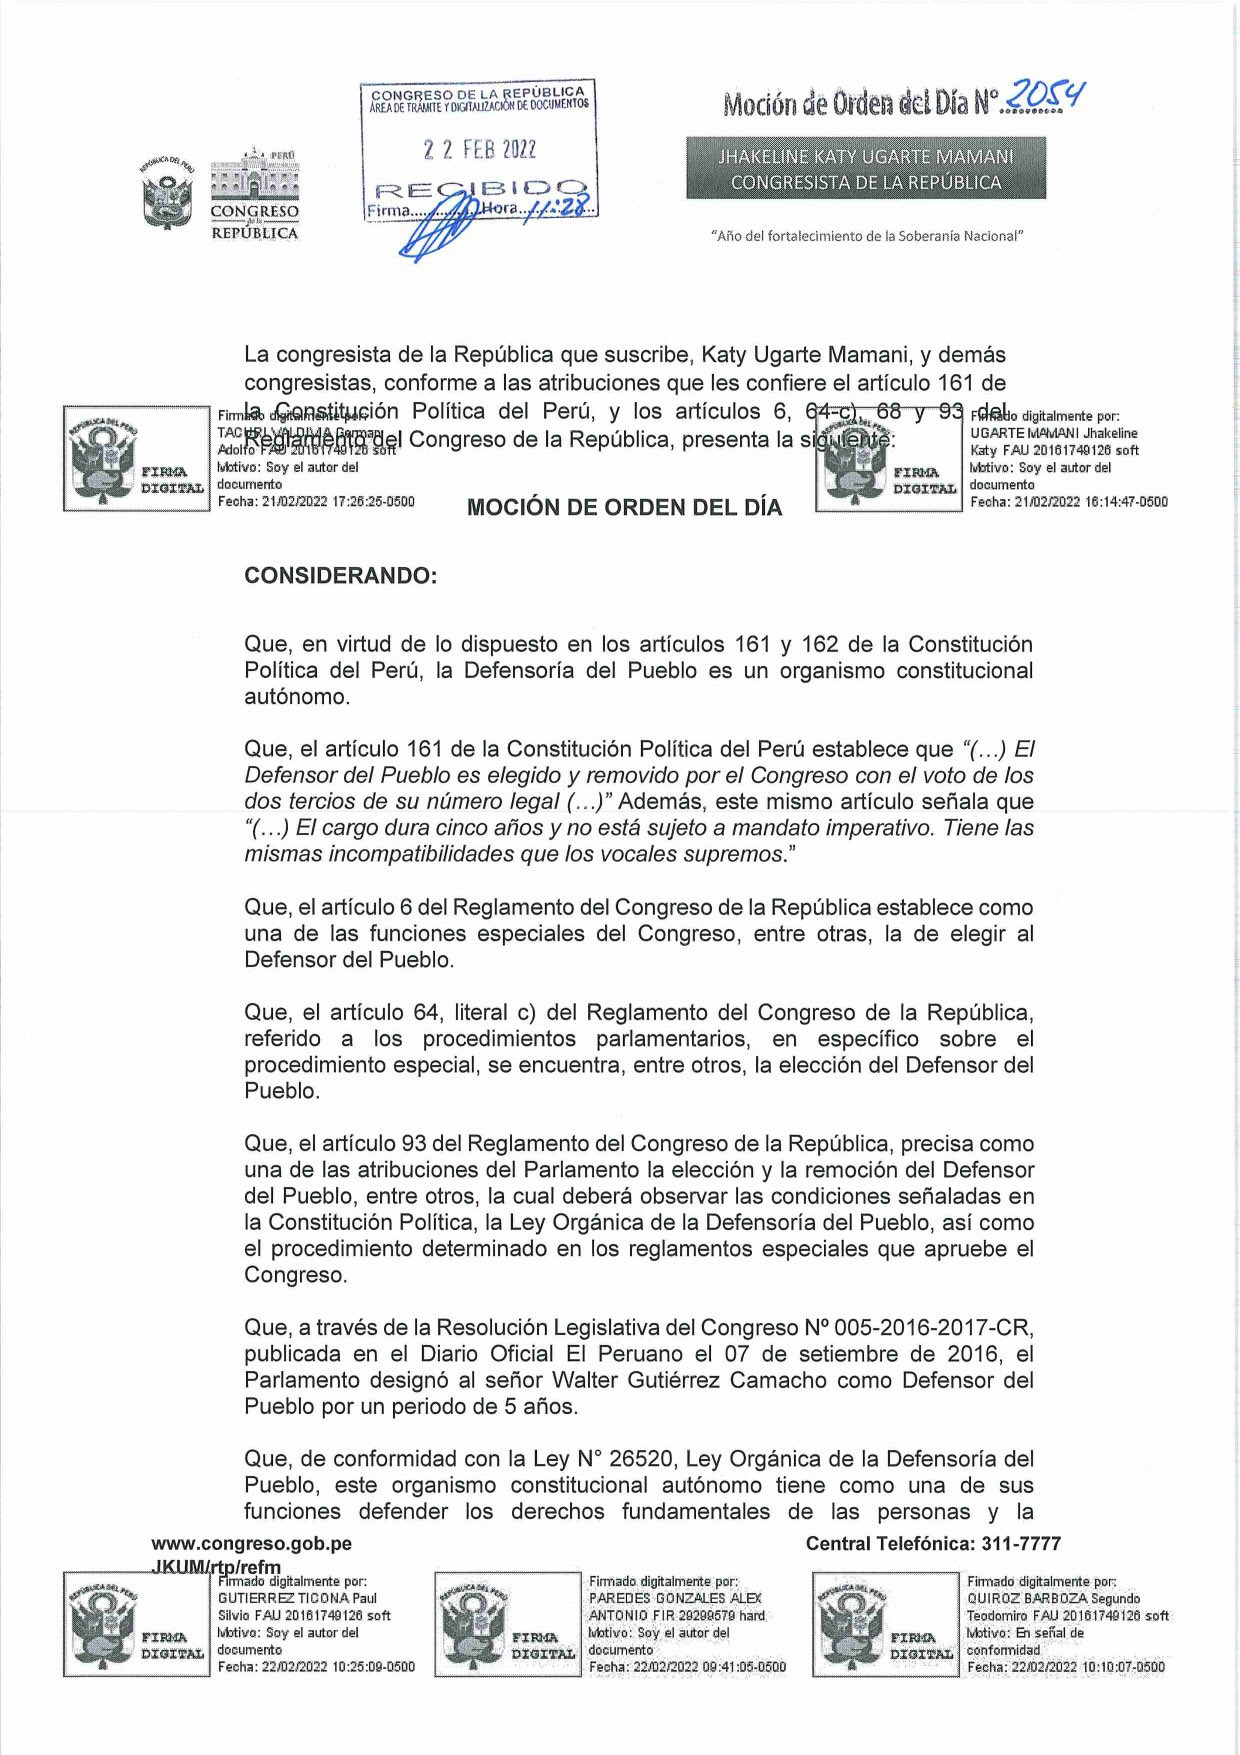 Defensoría del Pueblo: congresista pide reemplazar a Walter Gutiérrez